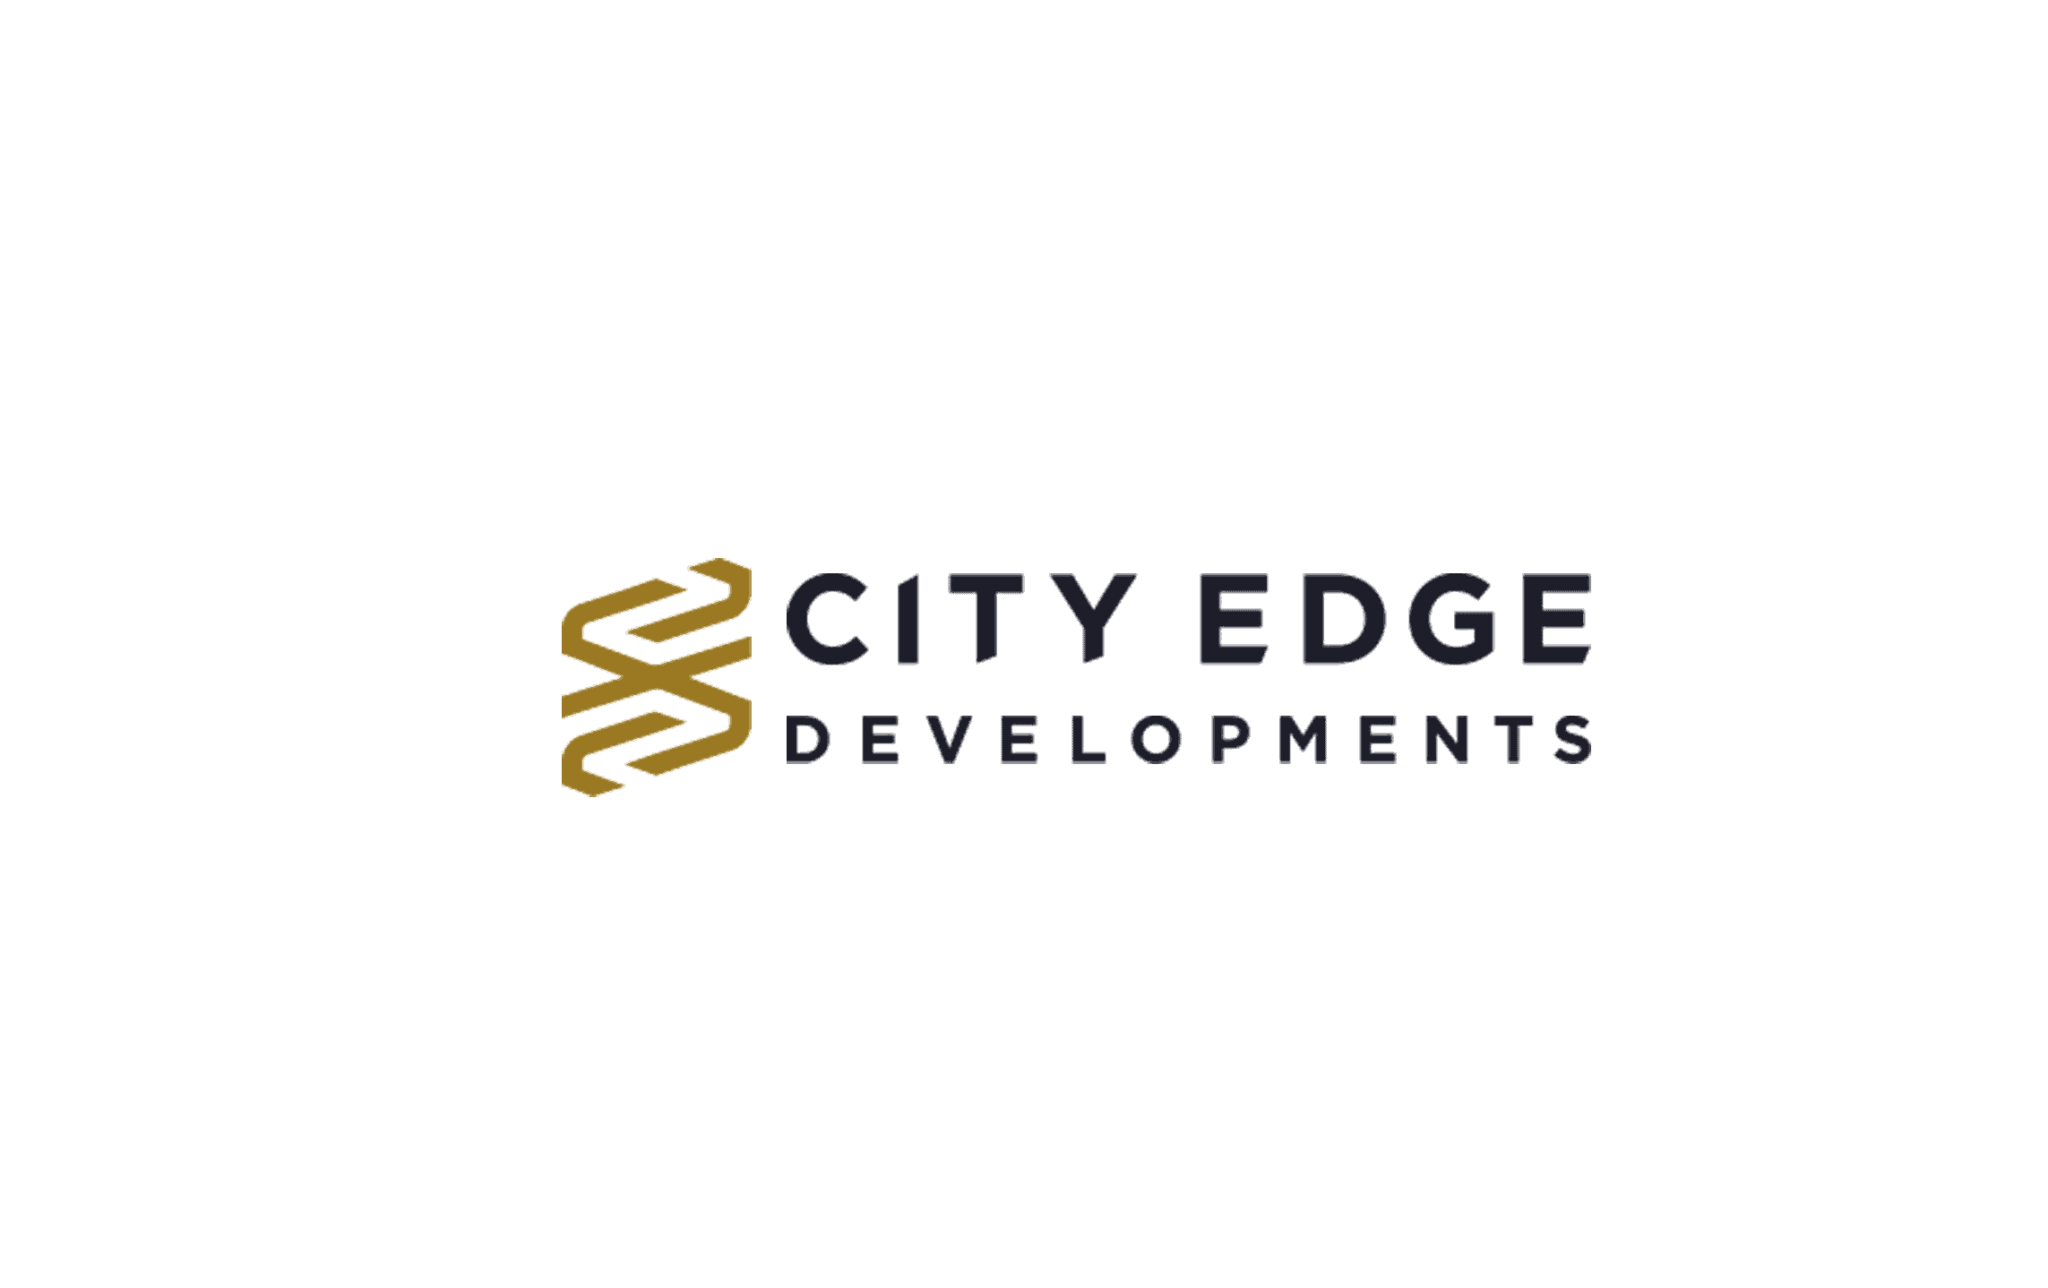 City Edge Development